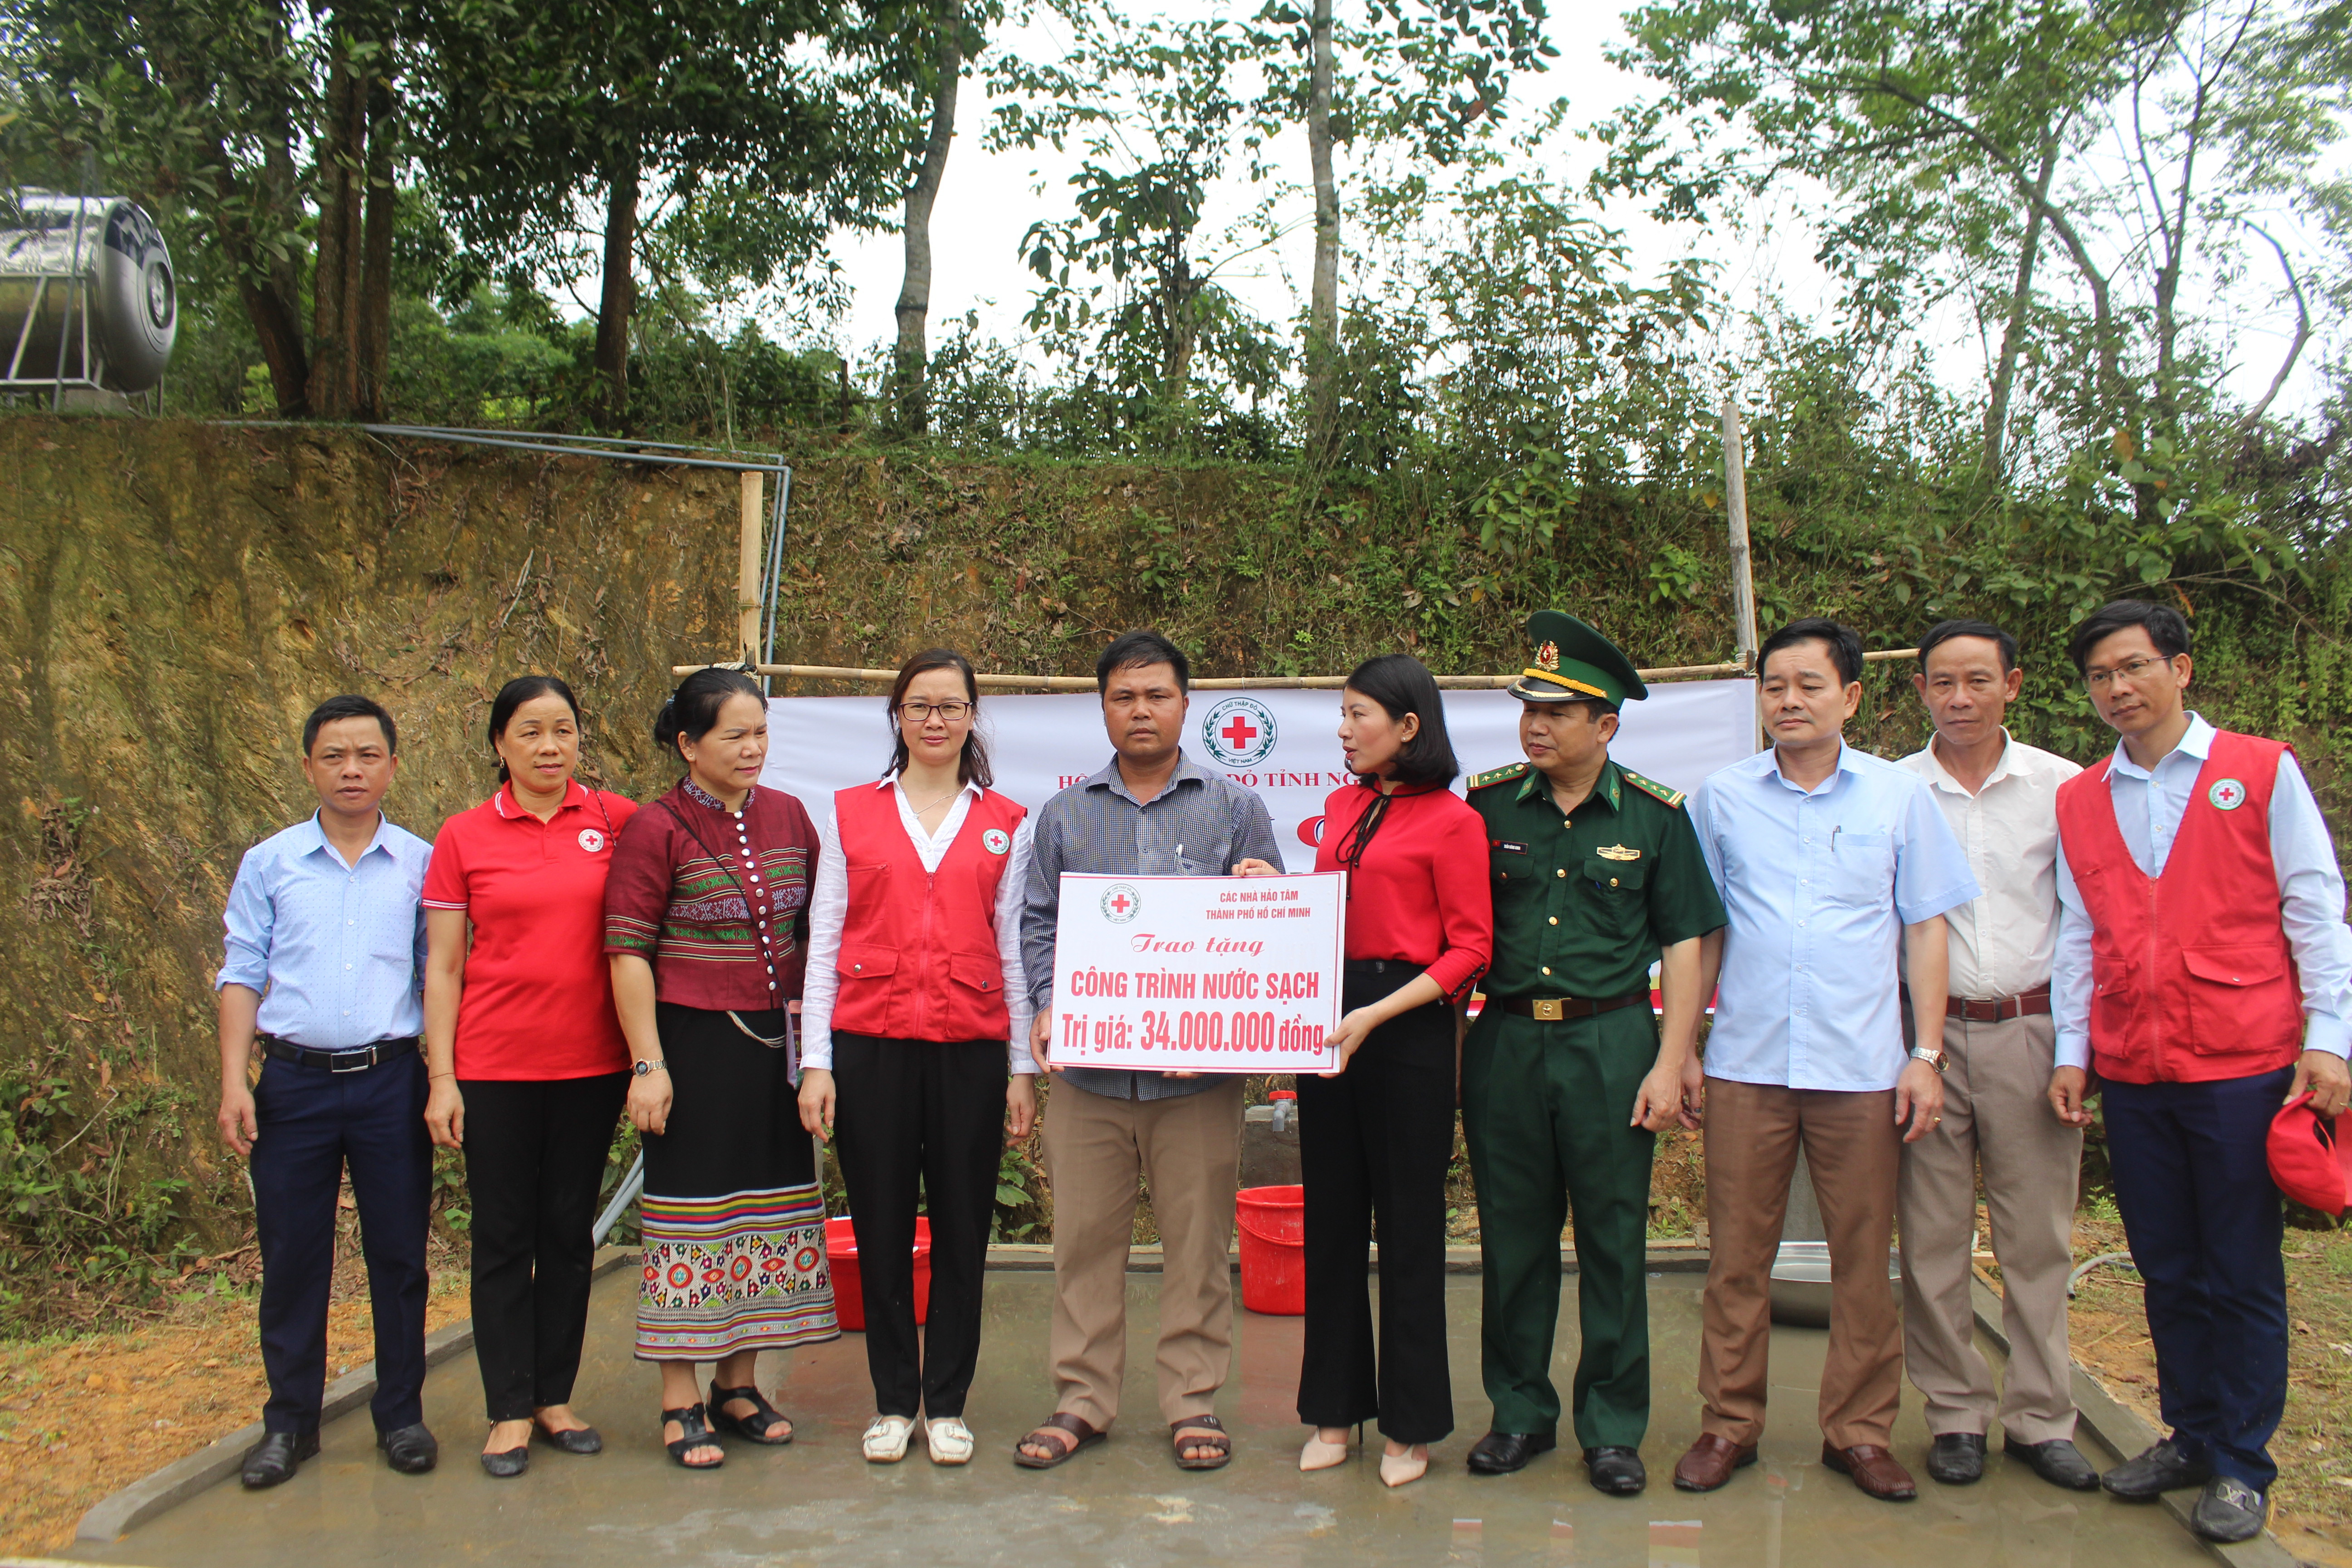 Trao tặng công trình nước sạch trị giá hơn 30 triệu đồng cho người dân bản Làng Yên xã Môn Sơn